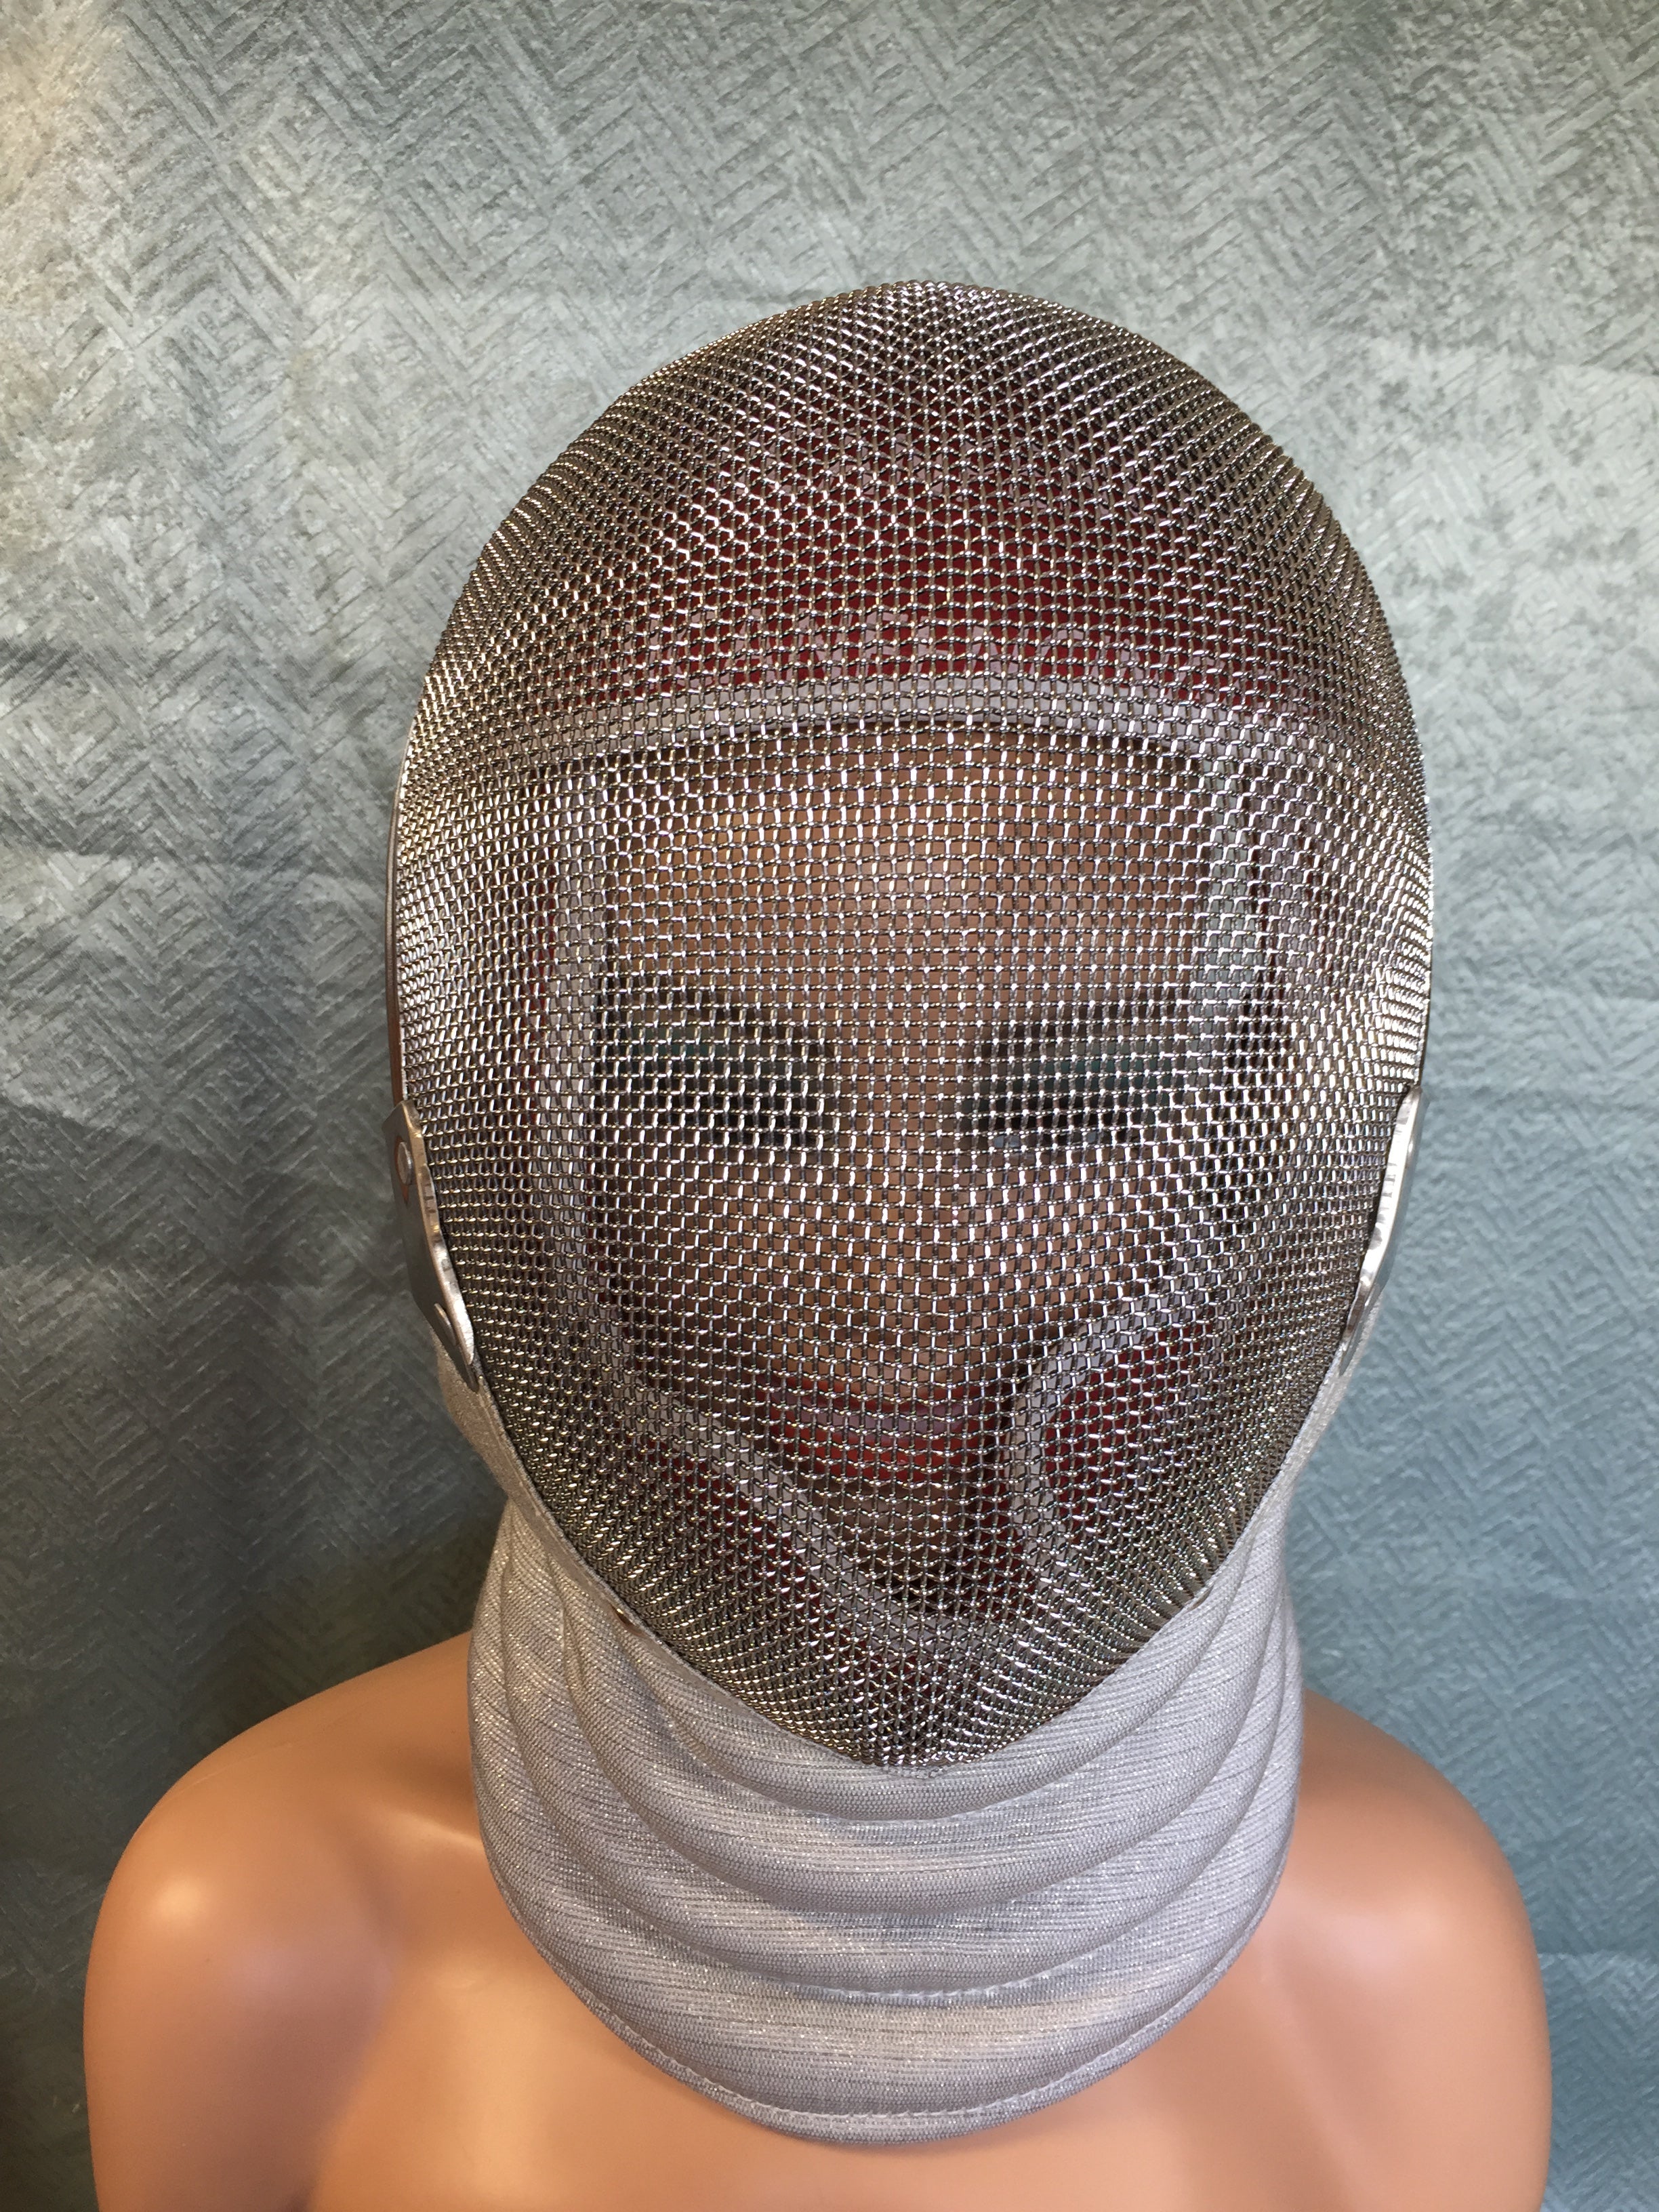 American Fencing Gear Fencing Sabre Mask - Mask Cord - Medium (7611405992174)